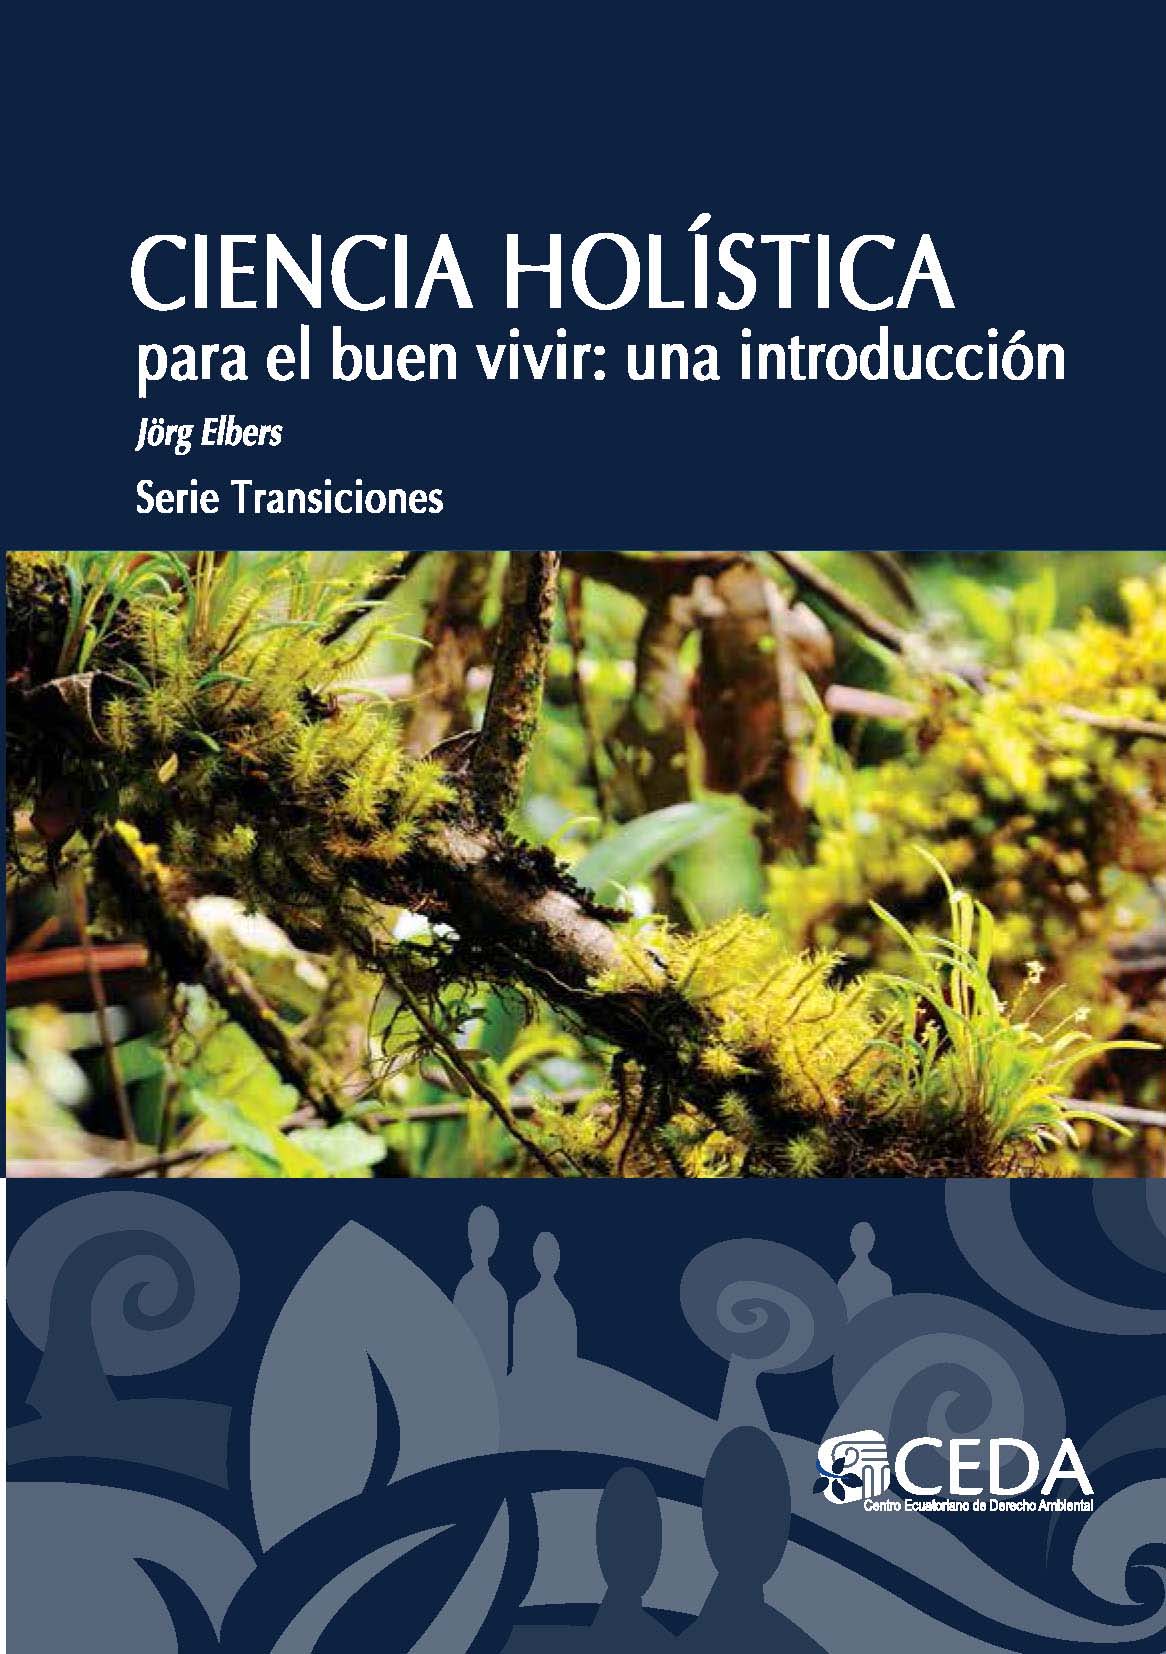 Elbers2013_Ciencia_holistica_Página_001.jpg